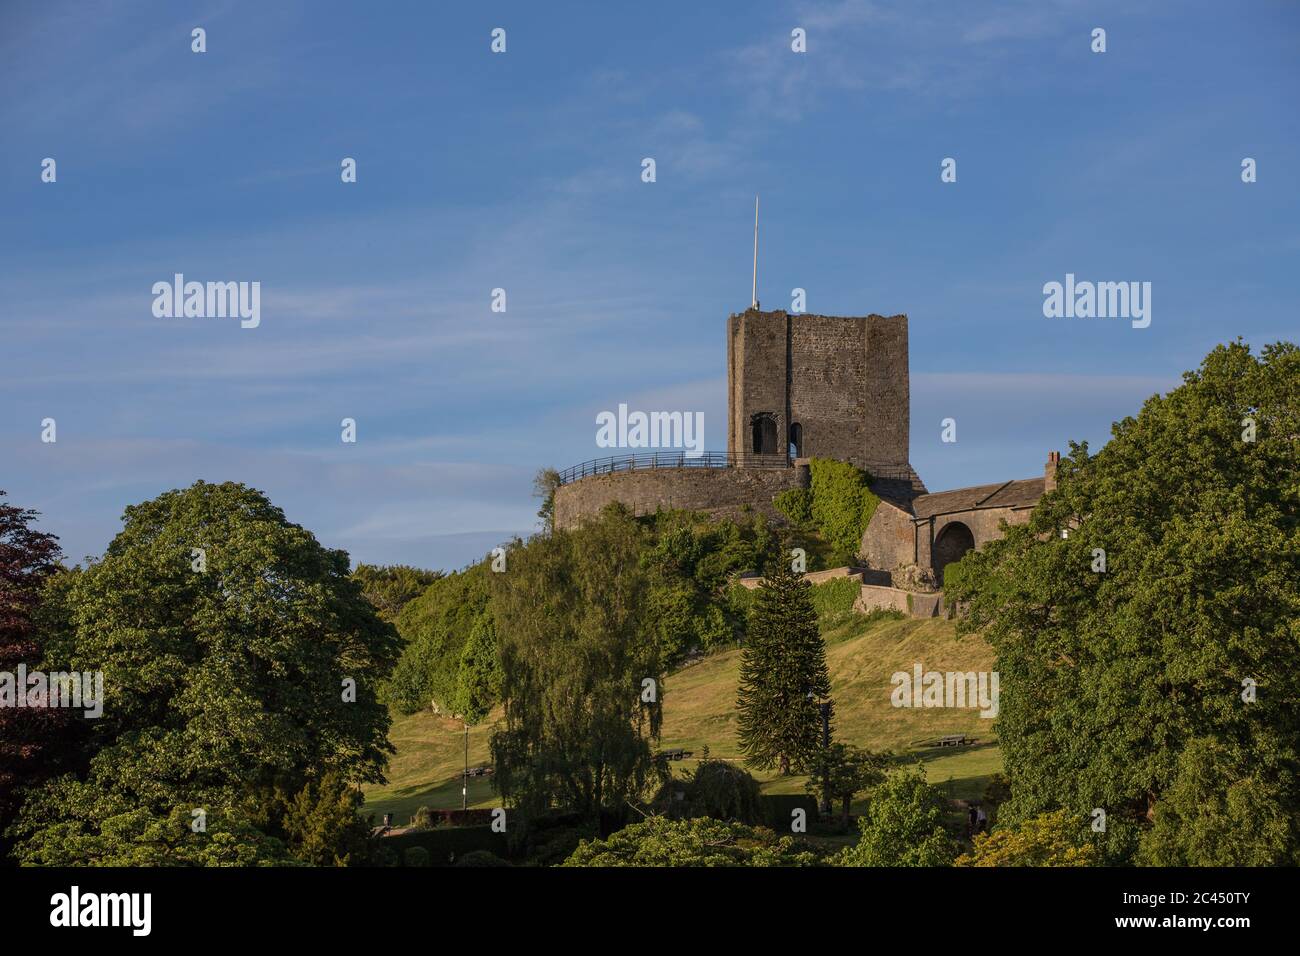 Vue sur le château de Clitheroe et les arbres avec un fond bleu ciel. Parc de la vallée de Ribble Banque D'Images